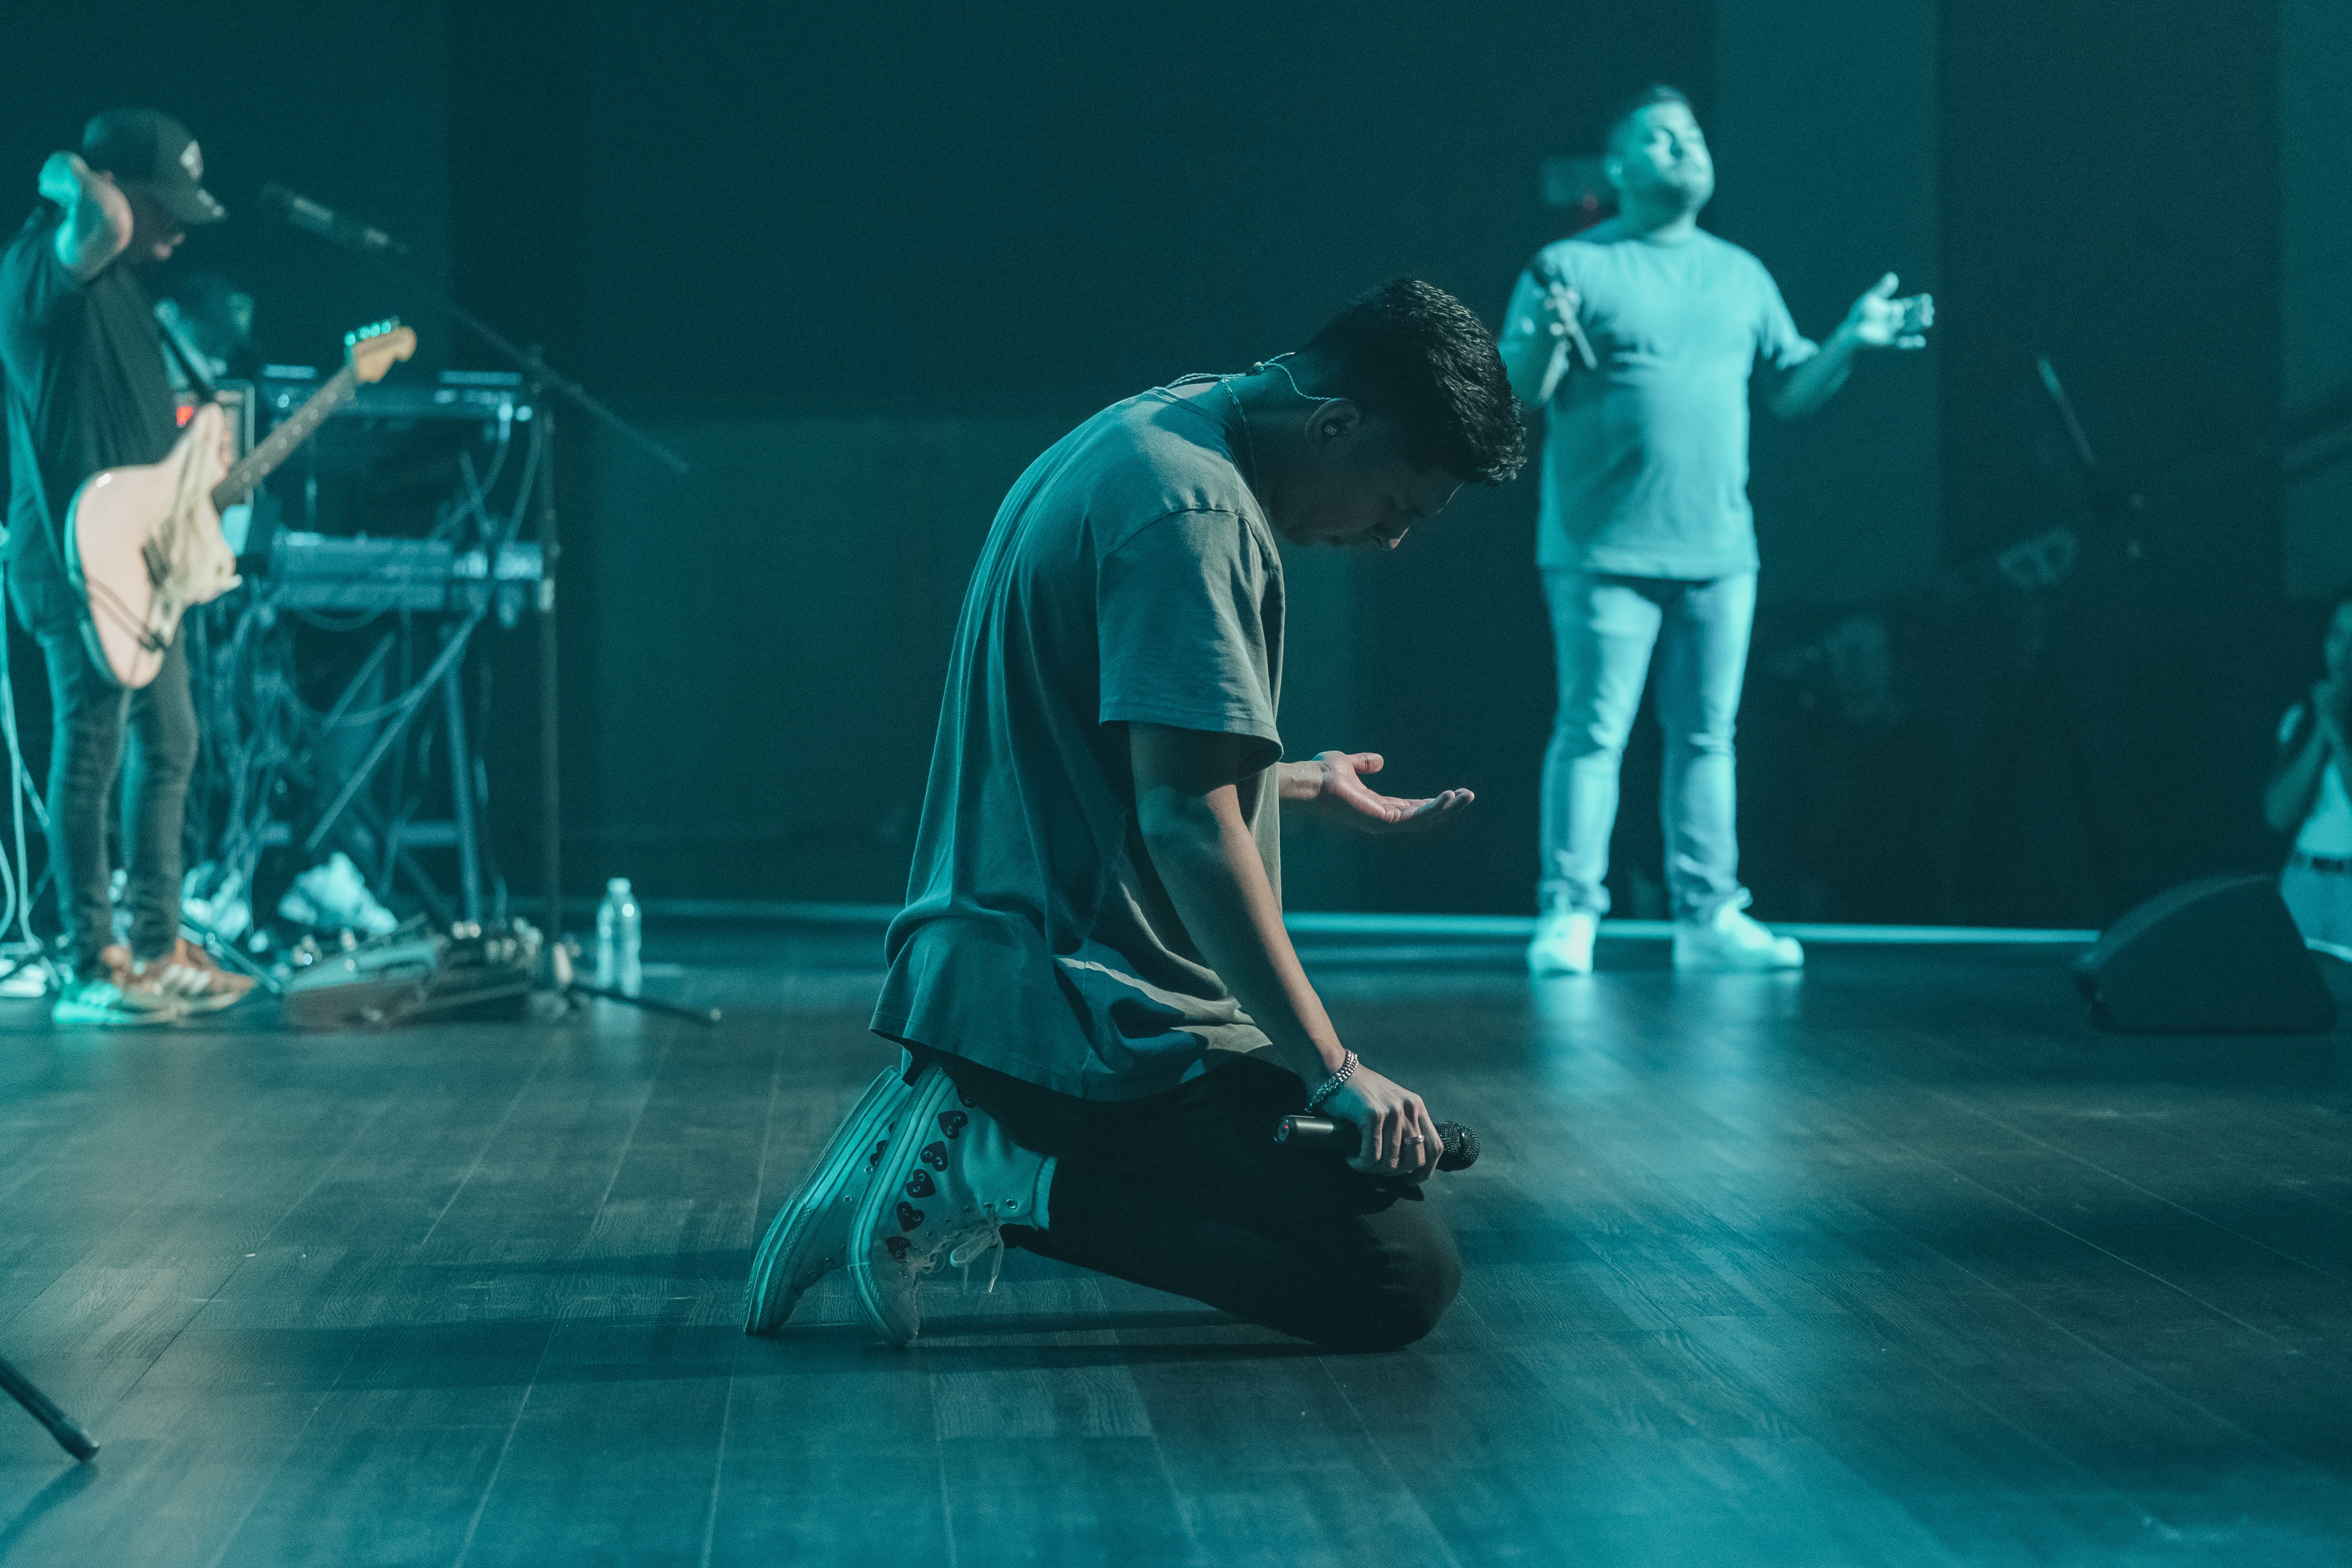 Worship leader on knees on stage.